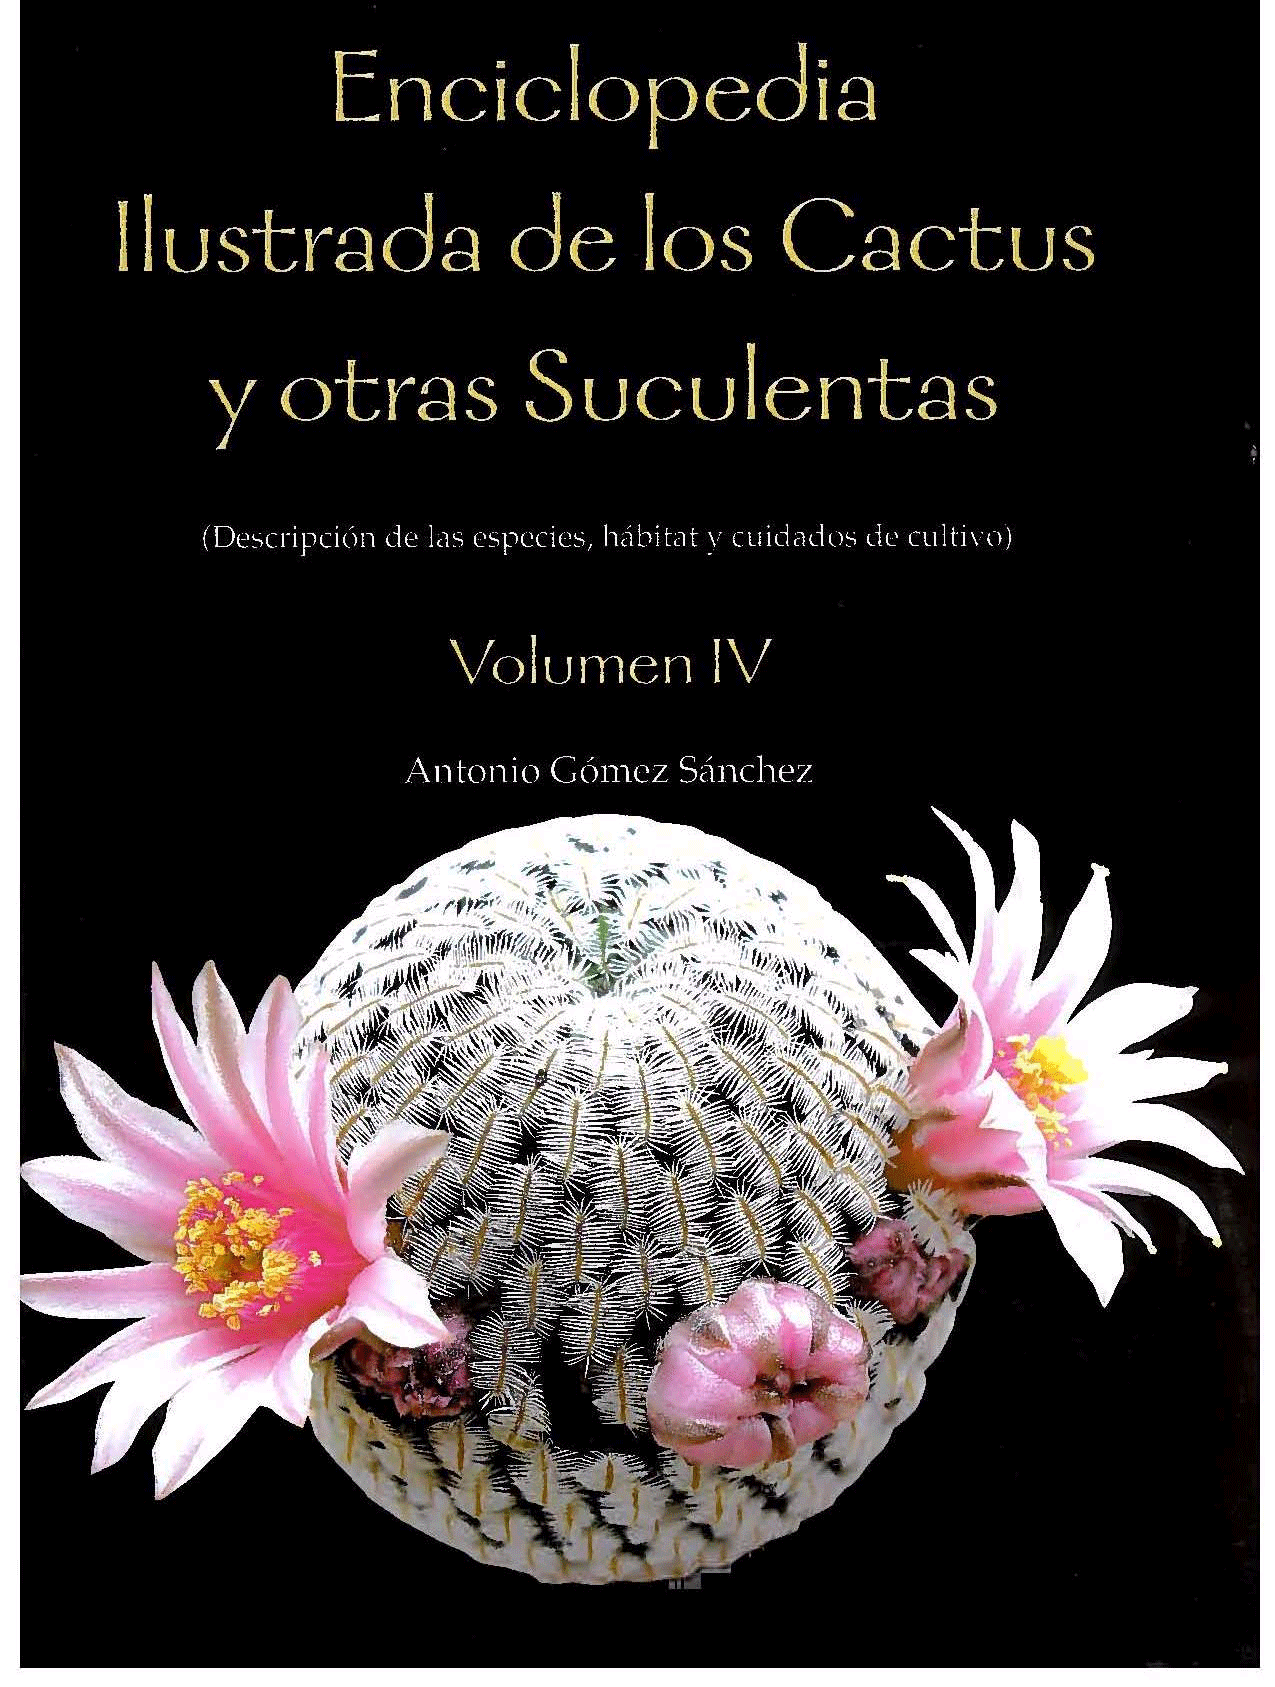 Enciclopedia ilustrada de los cactus y otras suculentas vol.IV